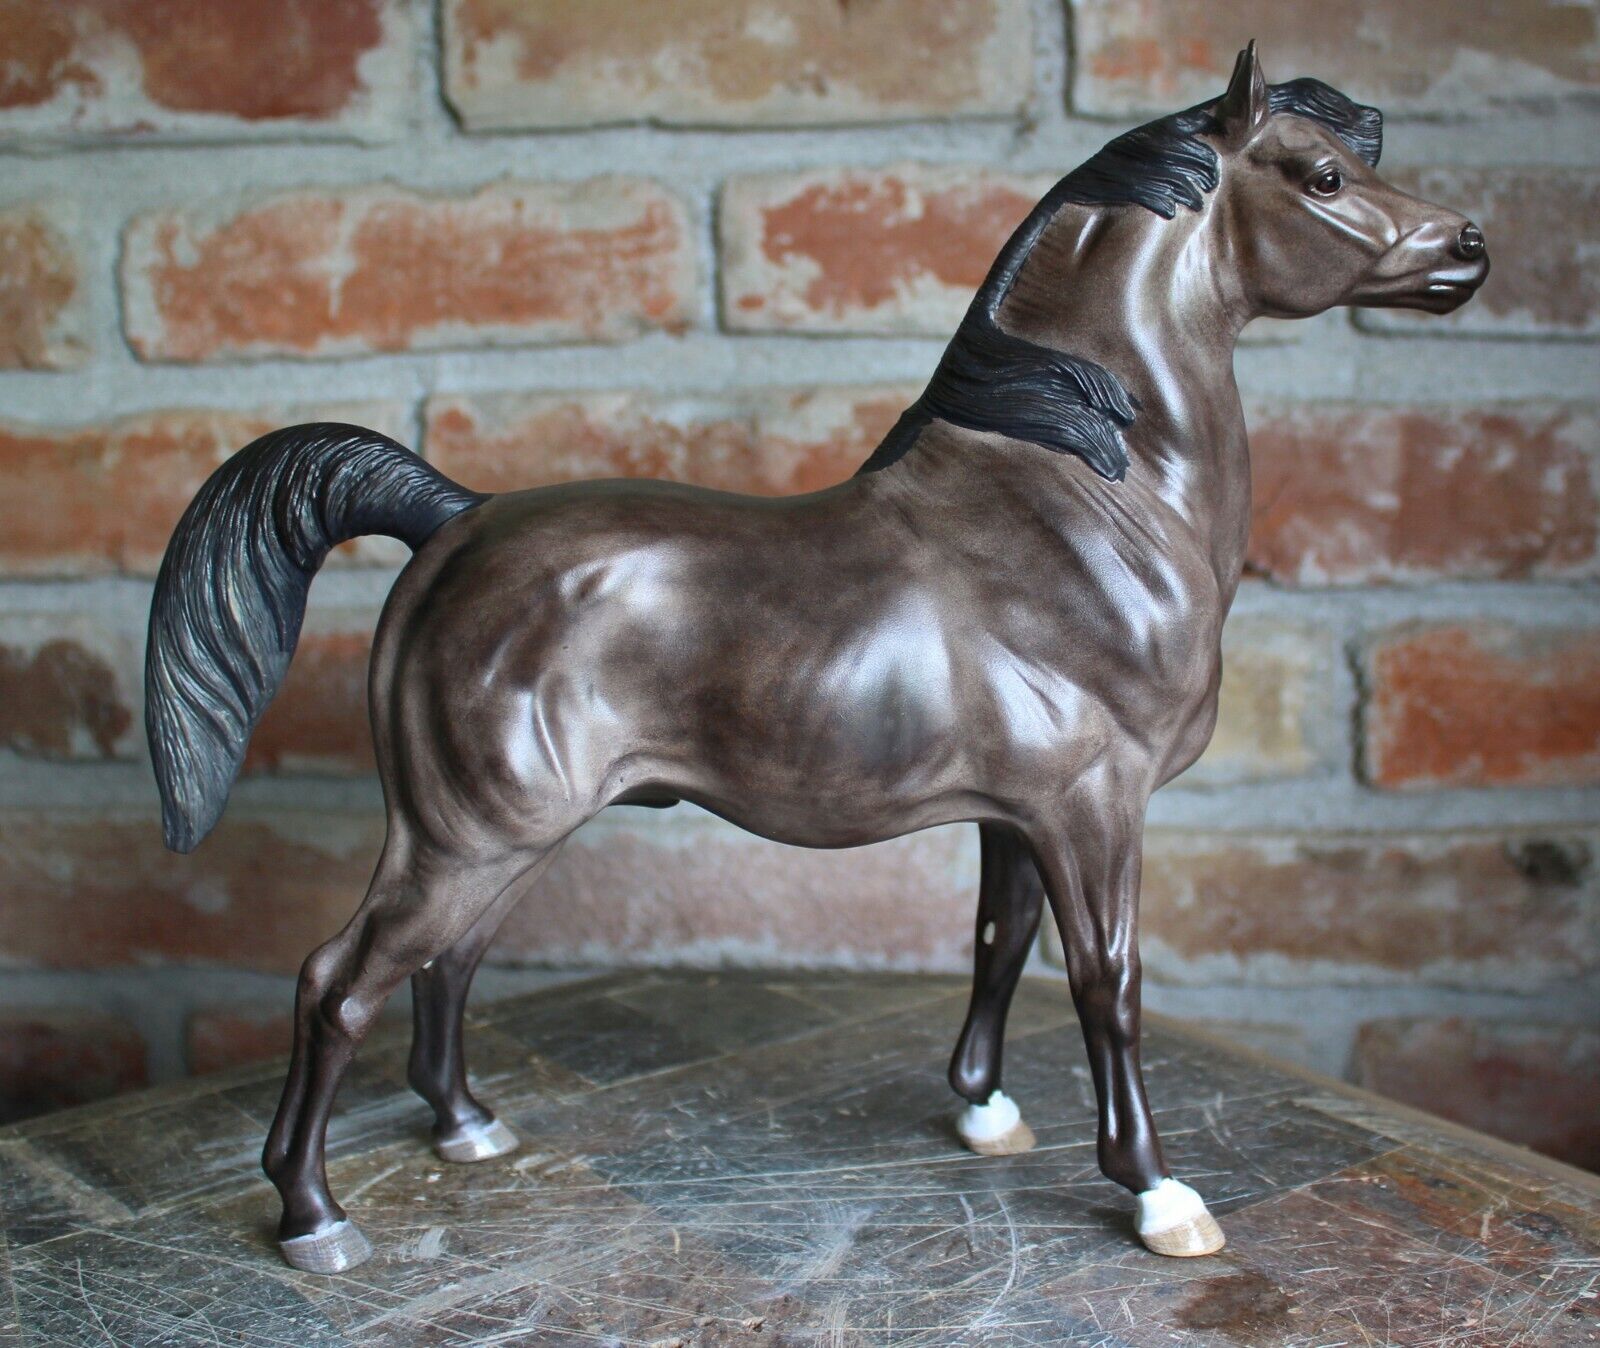 Hartland Custom Steel/Dapple Gray Regal Arabian Horse